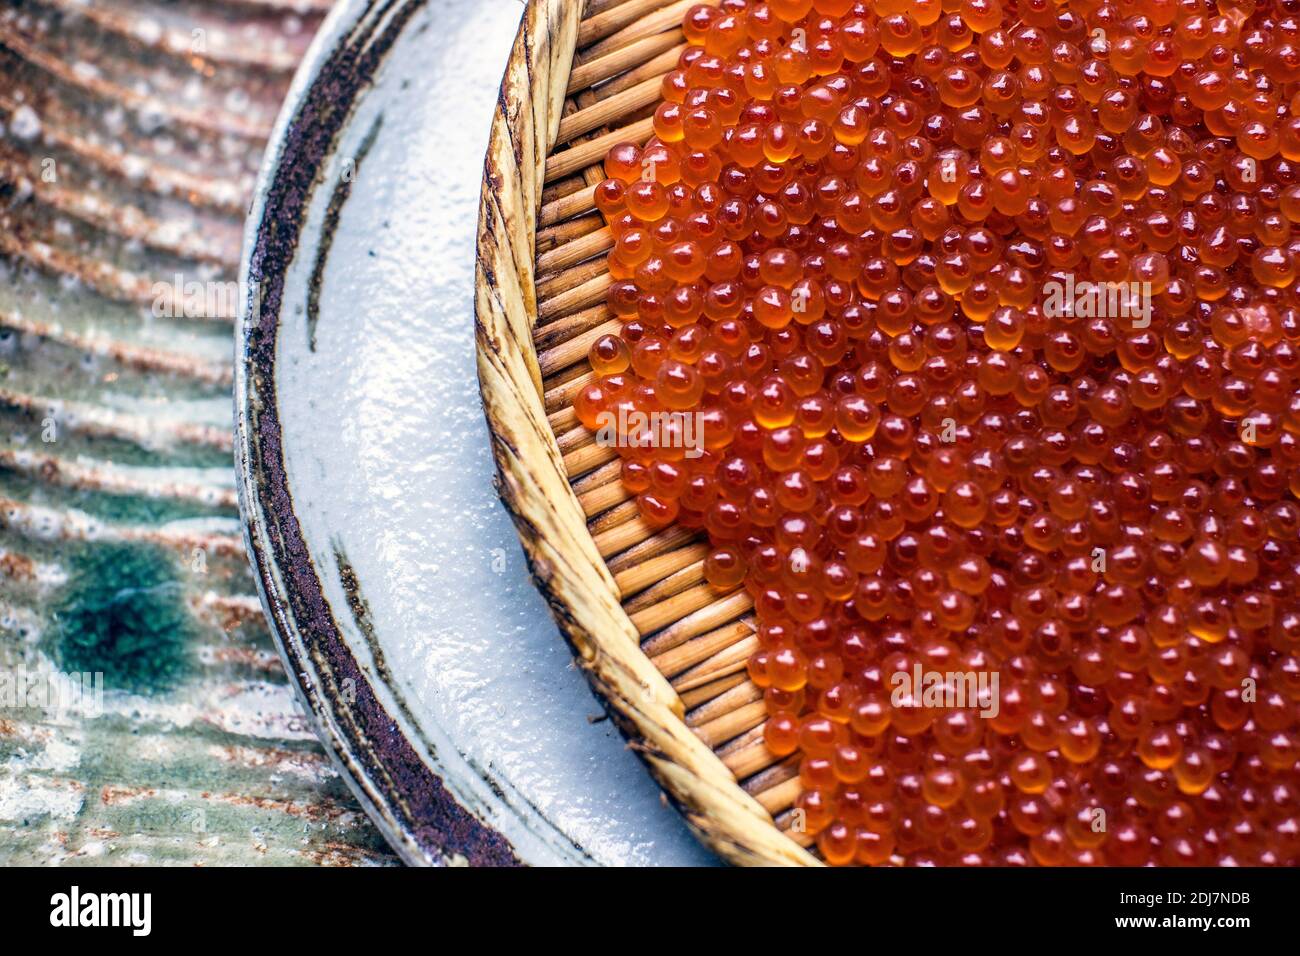 Salmon caviar or salmon roe Stock Photo